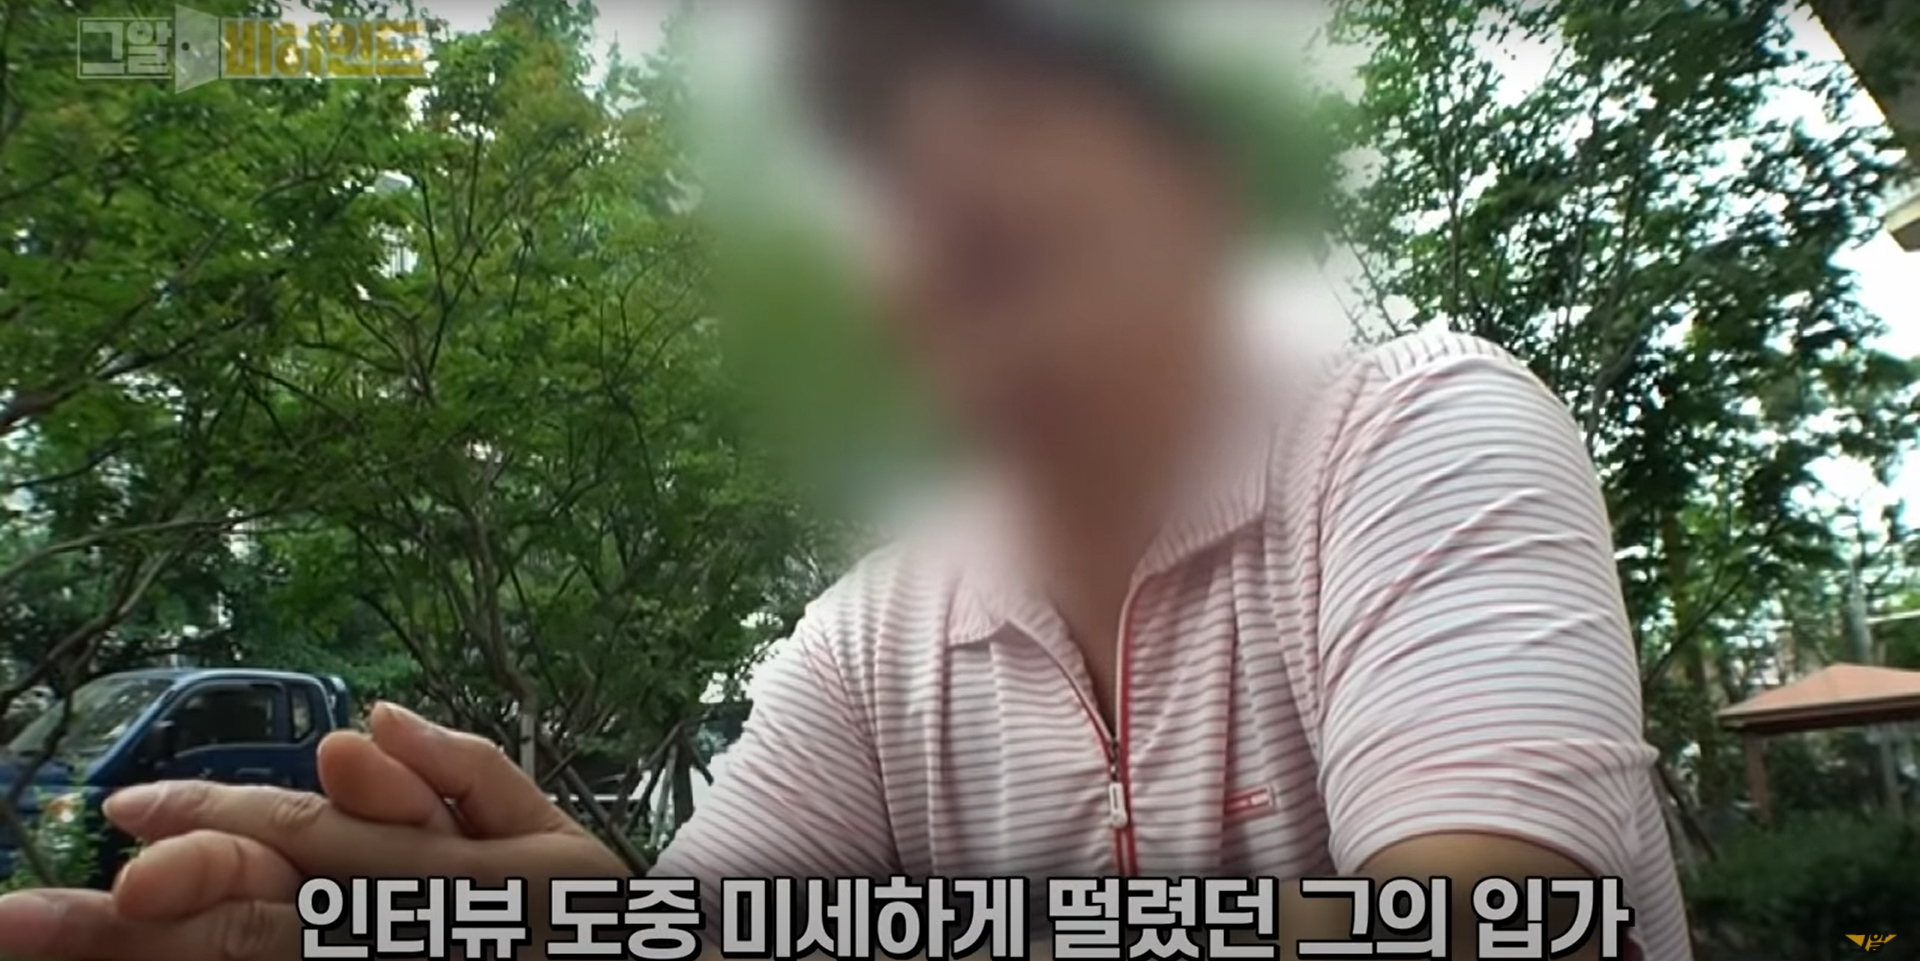 unsolved crimes in korea - Mr Kim